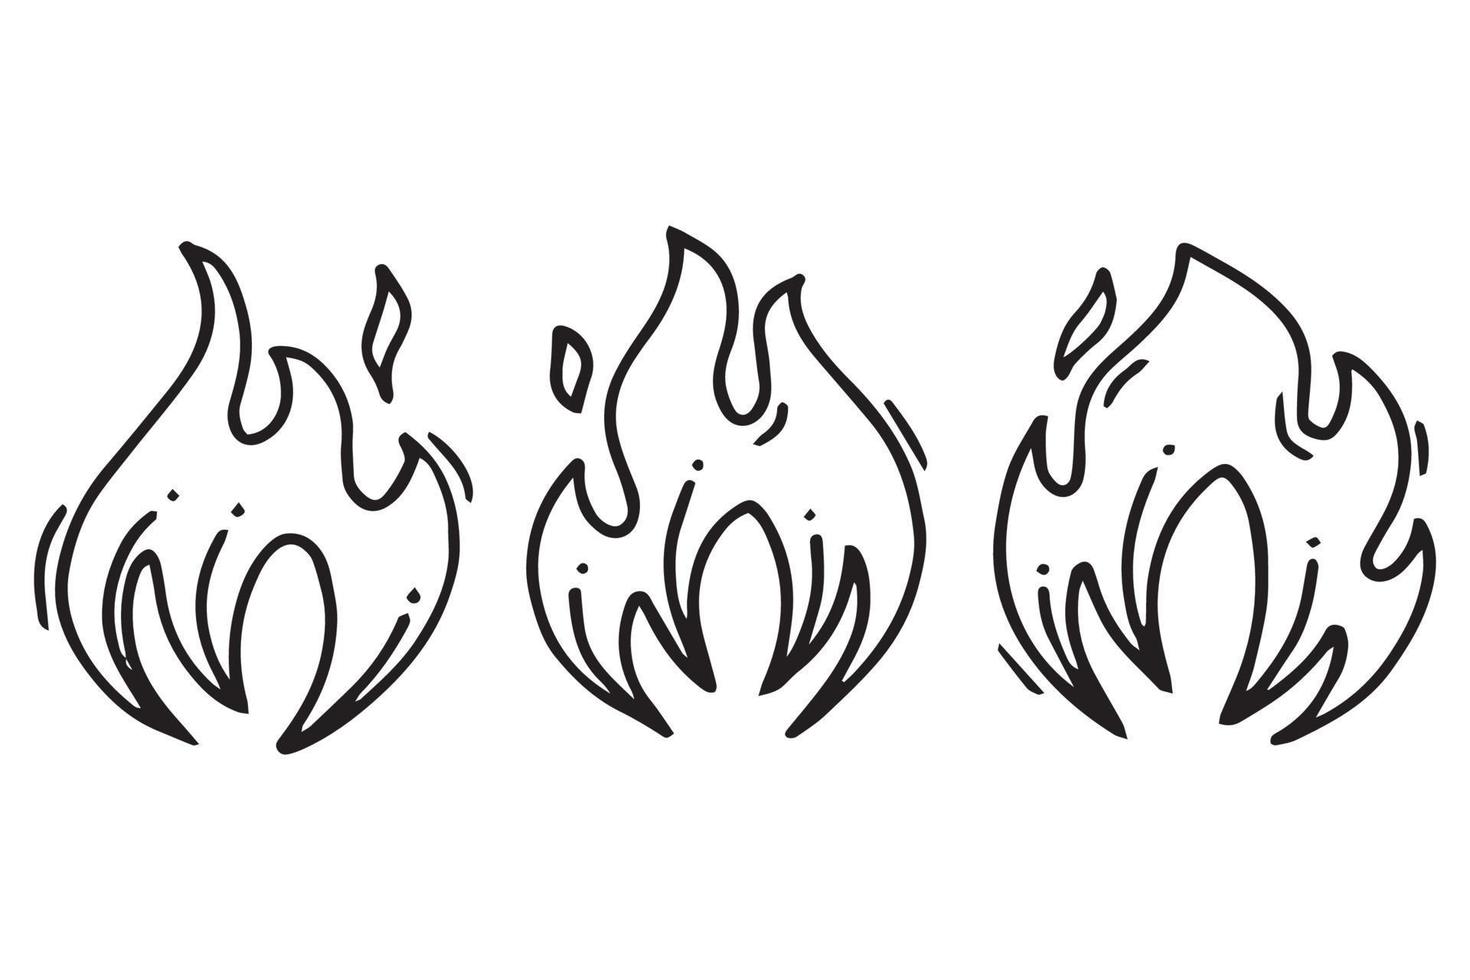 ícones de fogo desenhados à mão. conjunto de vetores de ícones de chamas de fogo. fogo de esboço de doodle desenhado à mão, desenho preto e branco. símbolo de fogo simples.